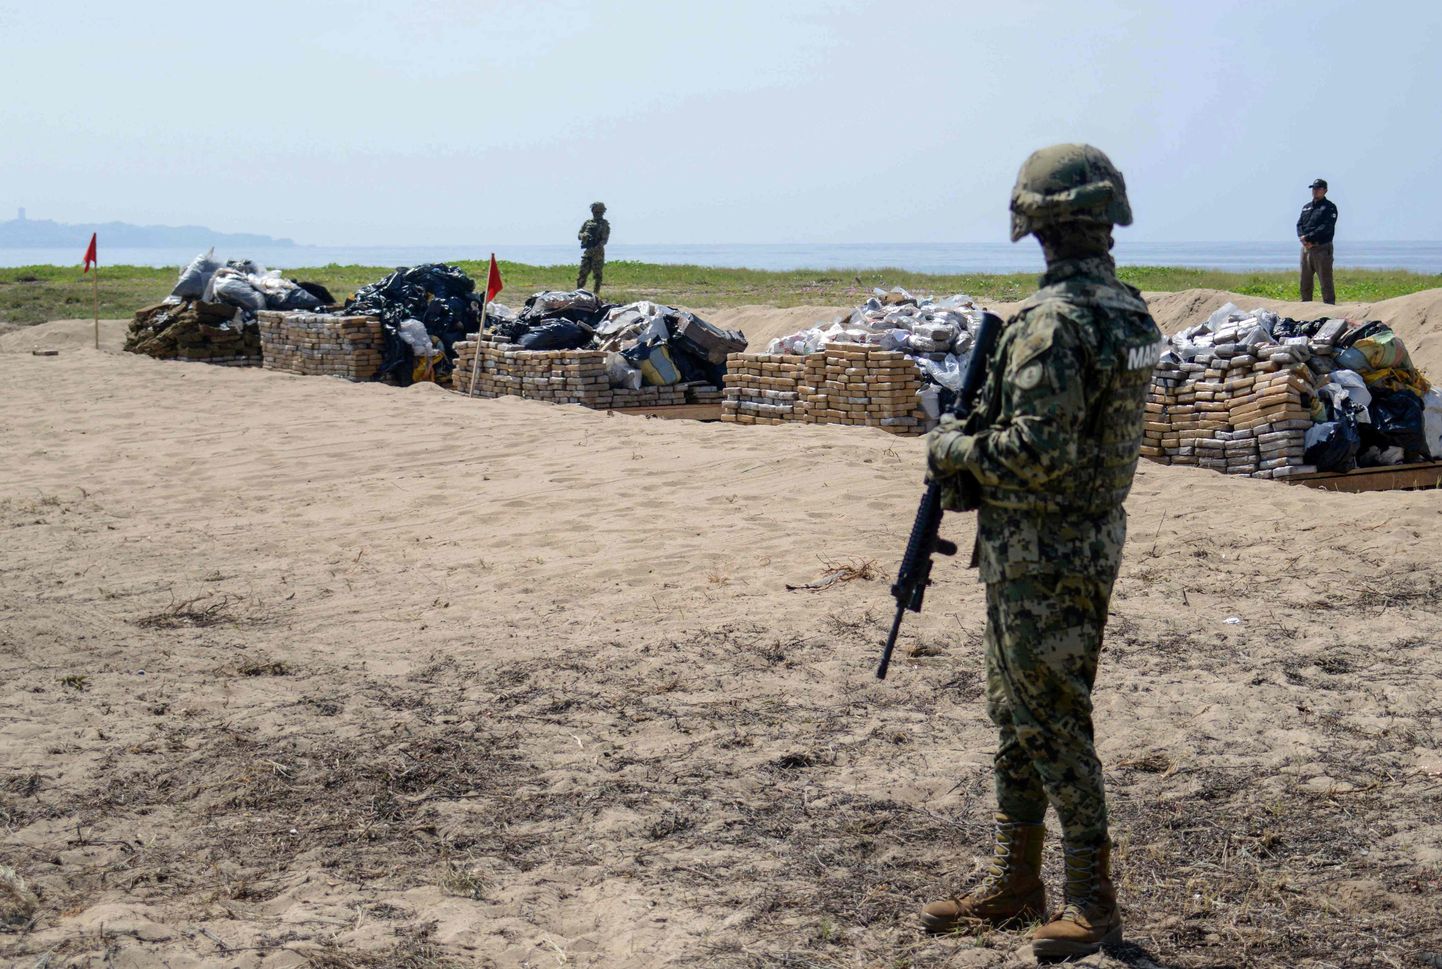 Meksikas jūras kājinieks uzrauga kokaīna un marihuānas iznīcināšanu Akapulko, 2018. gada septembrī 